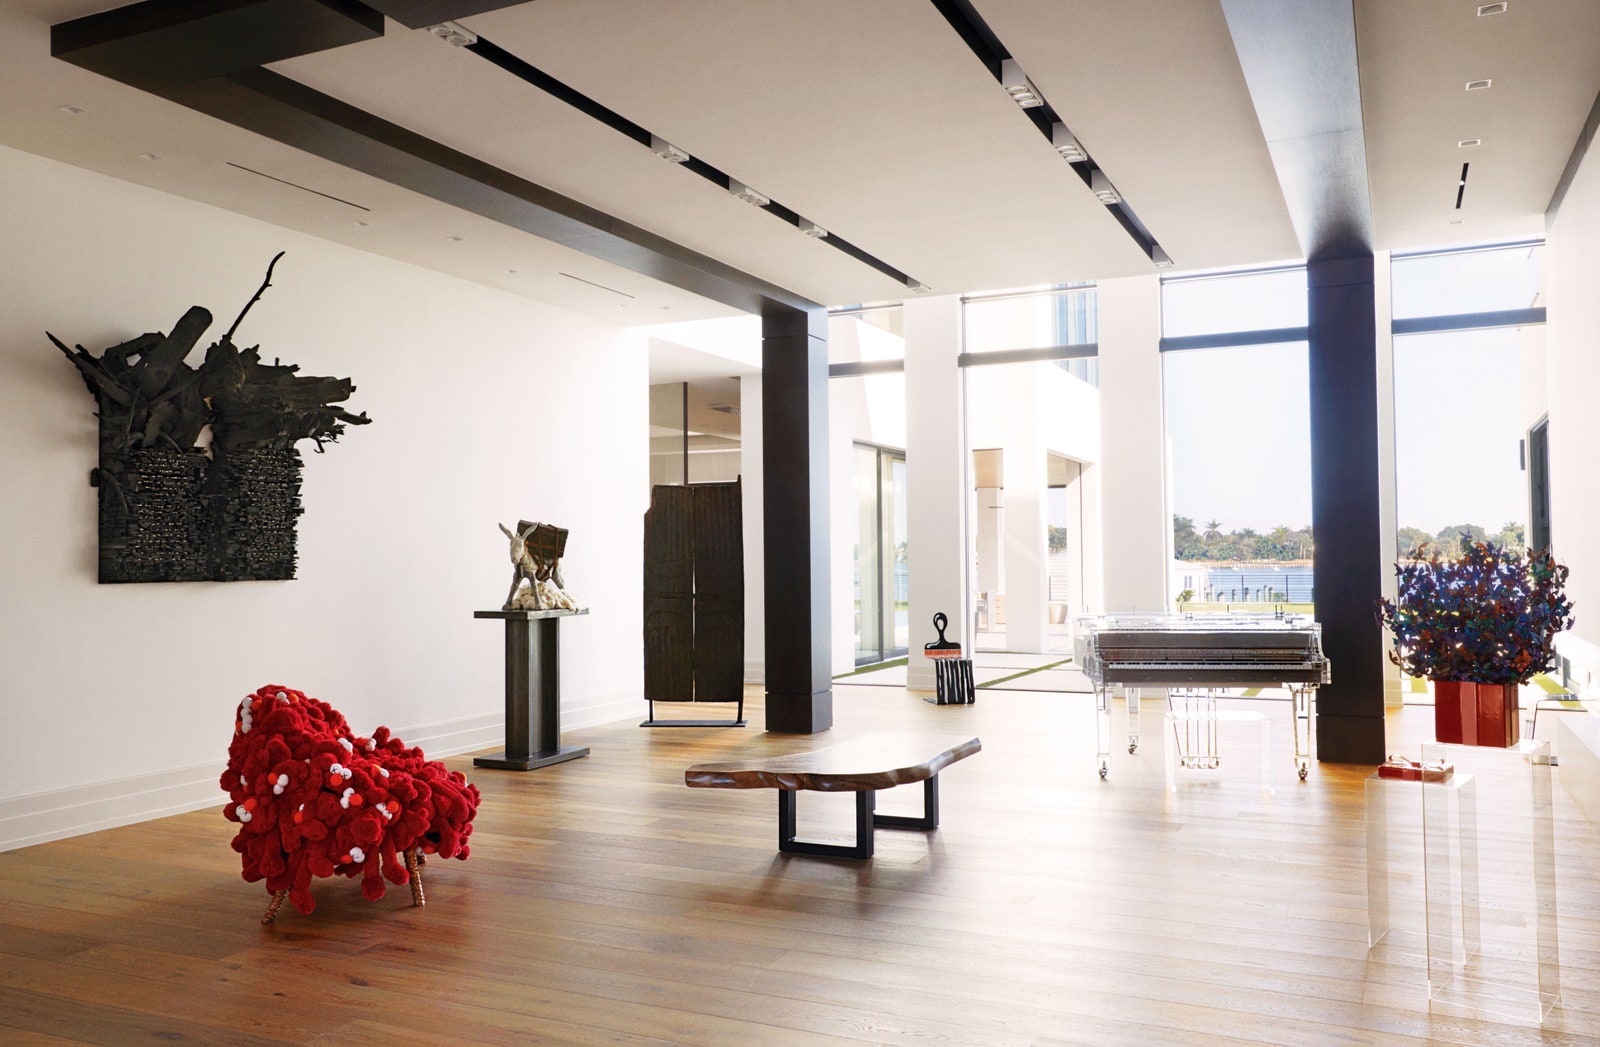 Від величезної гардеробної кімнати до галереї: Серена Вільямс показала свій новий будинок у Флориді